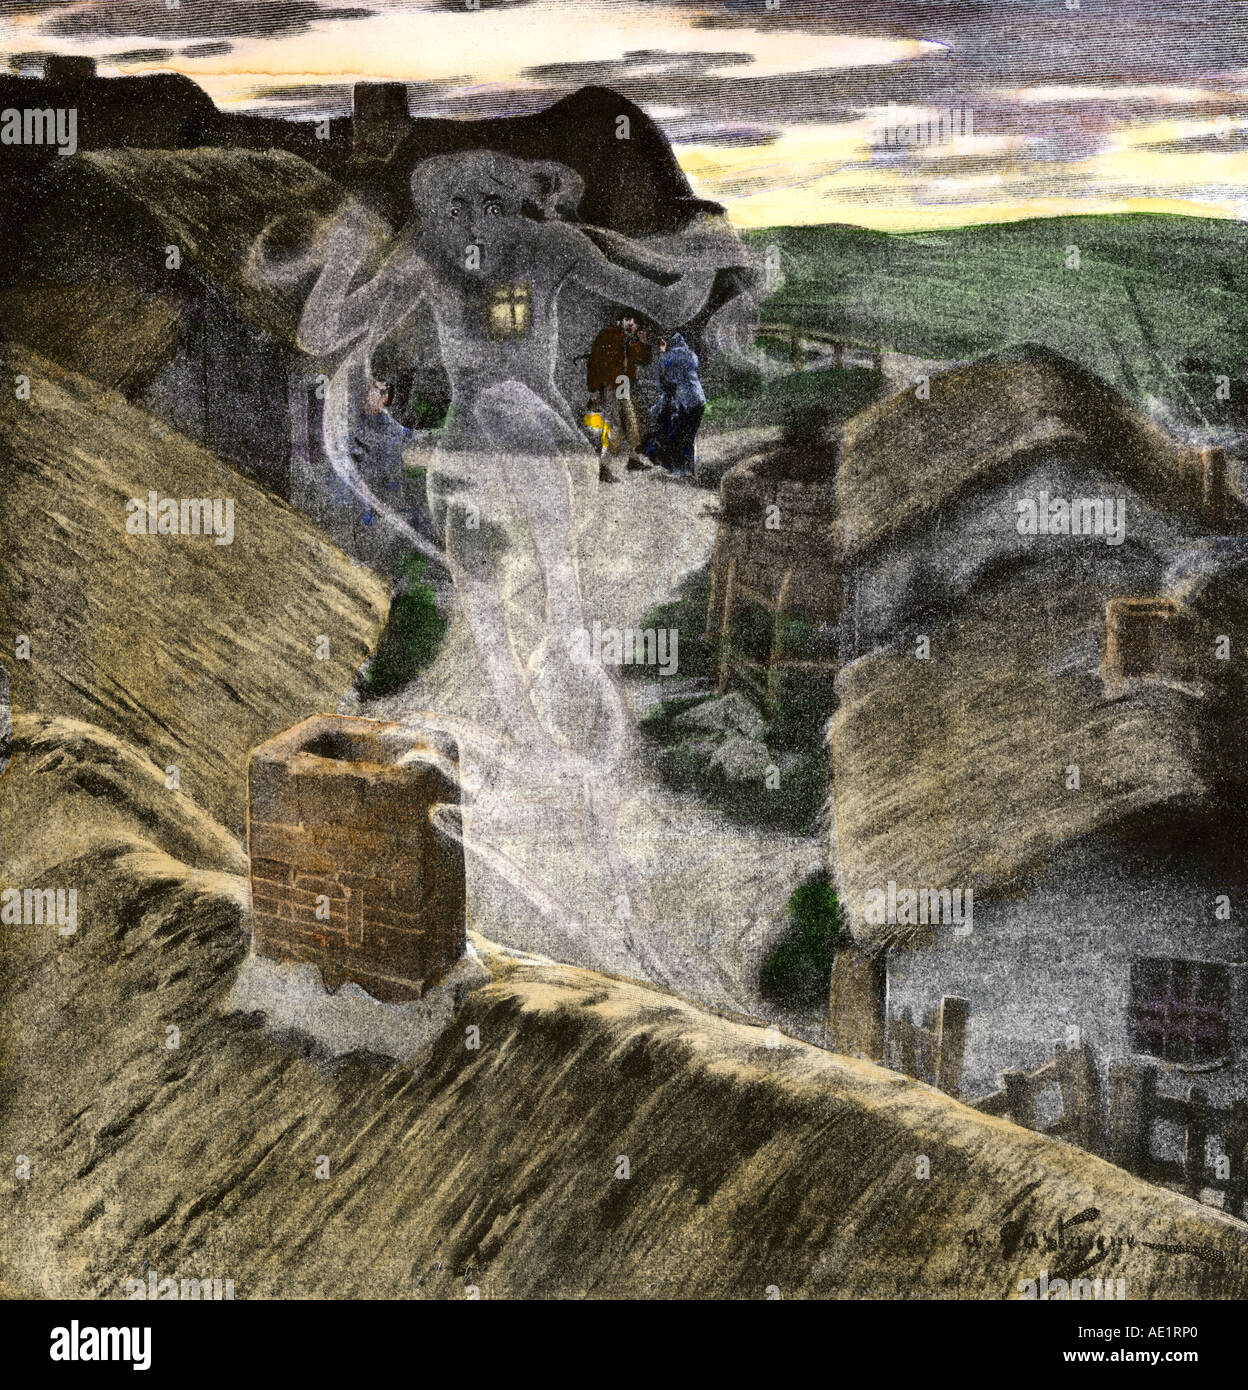 Banshee heulende Tod in einem irischen Dorf vorauszusagen. Handcolorierte halftone einer Abbildung Stockfoto